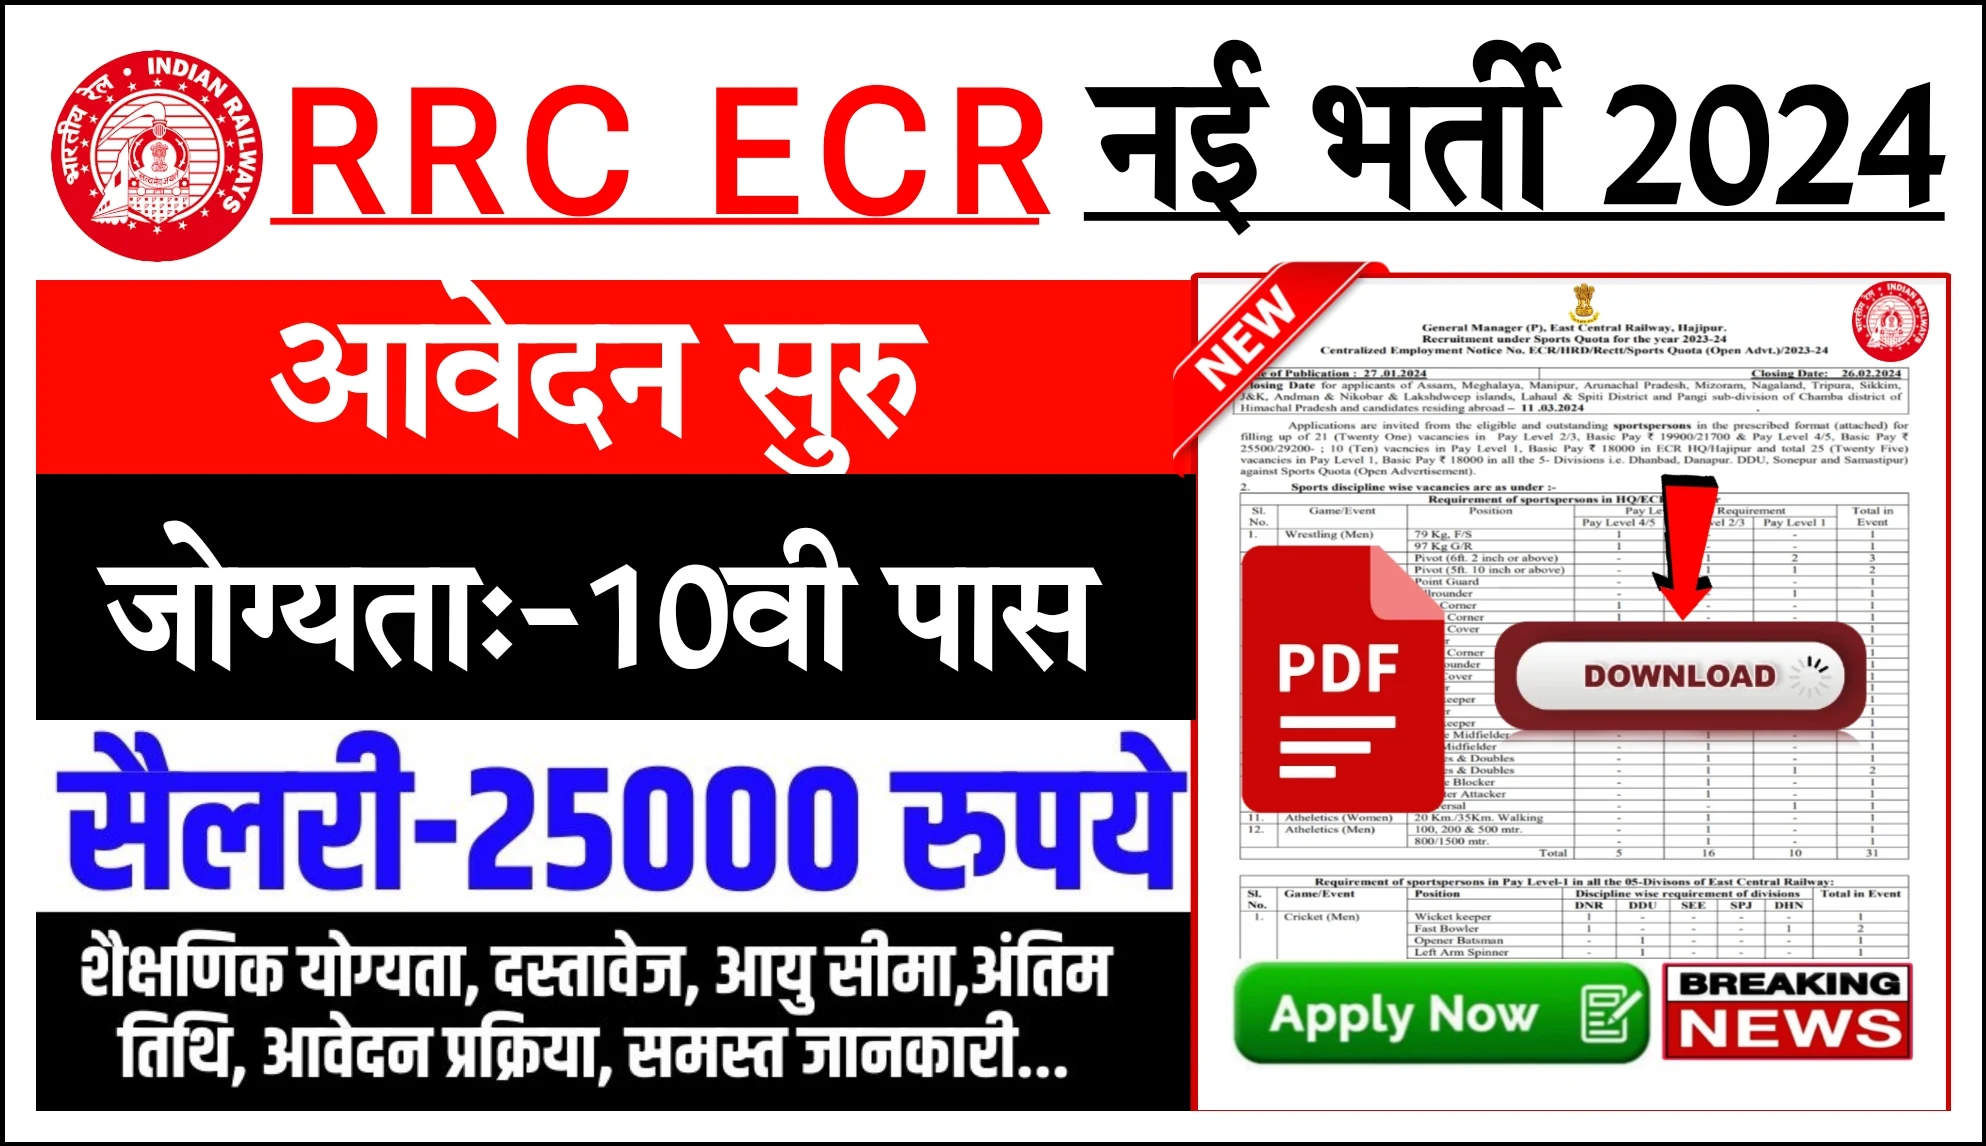 RRC ECR Railway Recruitment 2024 : ईस्ट सेंट्रल रेलवे भर्ती का बिना परीक्षा नोटिफिकेशन जारी, यहां से करें आवेदन अन्तिम तिथि 26 फरवरी